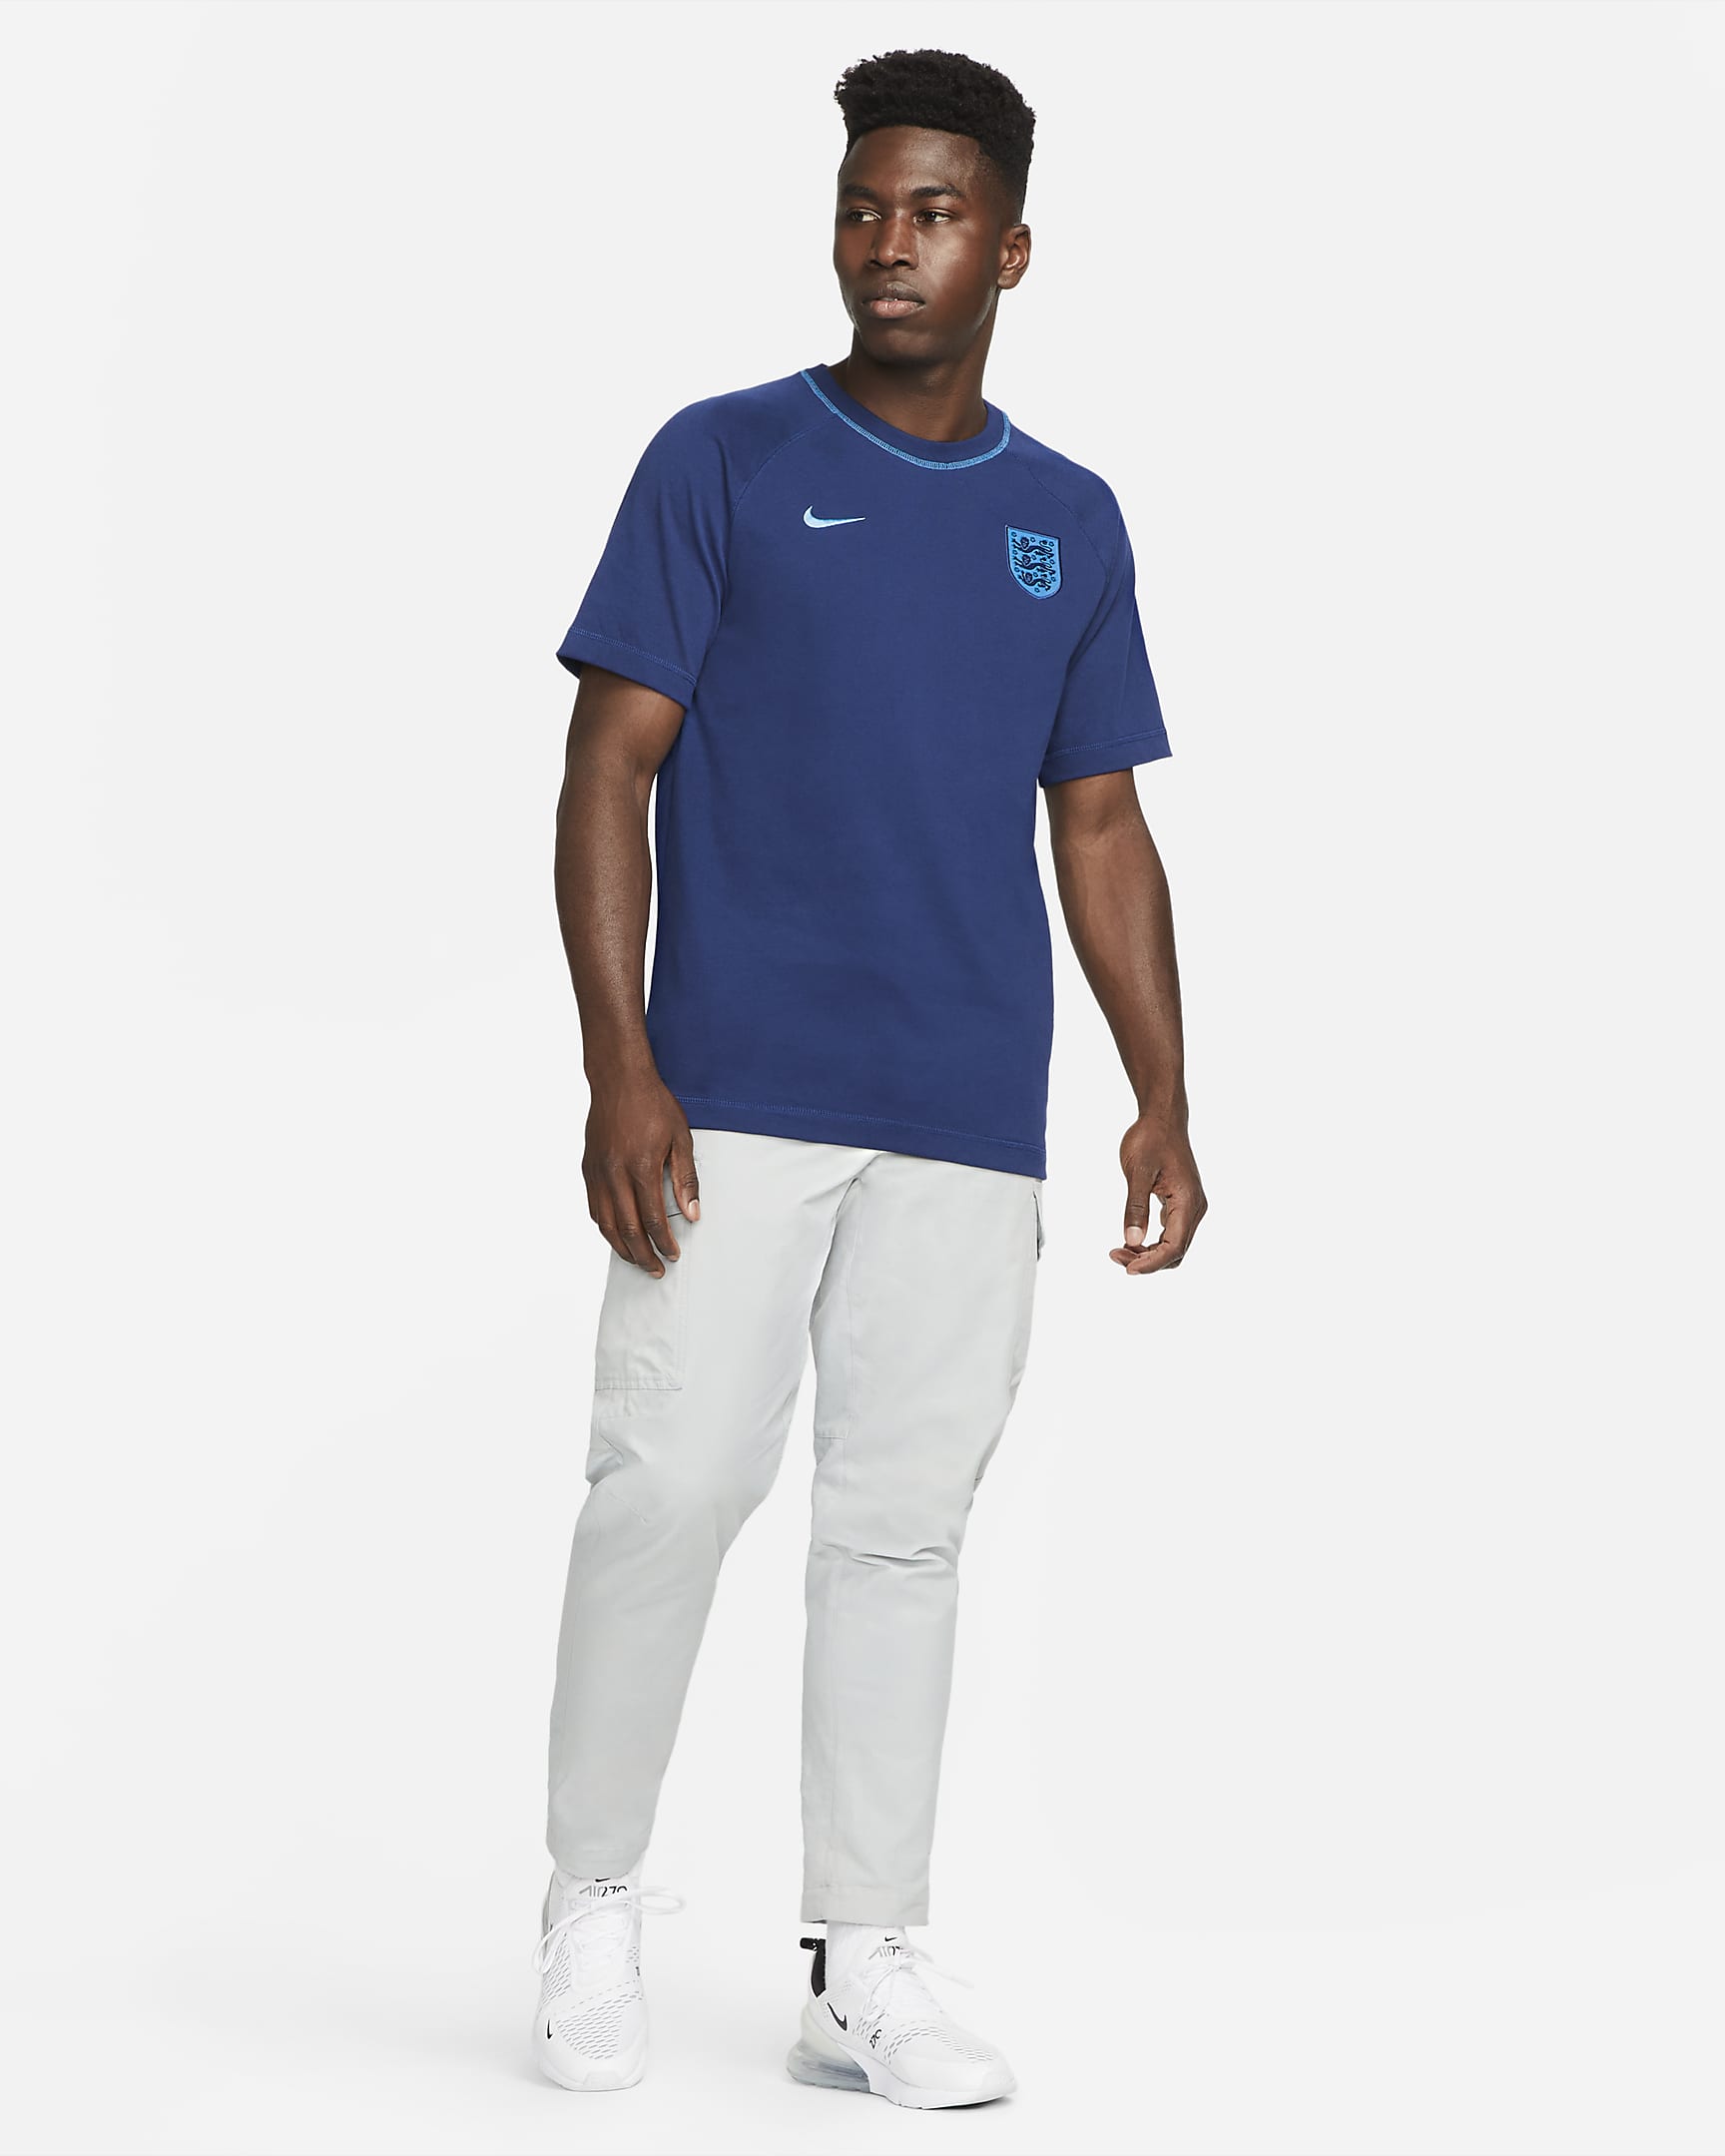 England Men's Nike Soccer Top. Nike.com